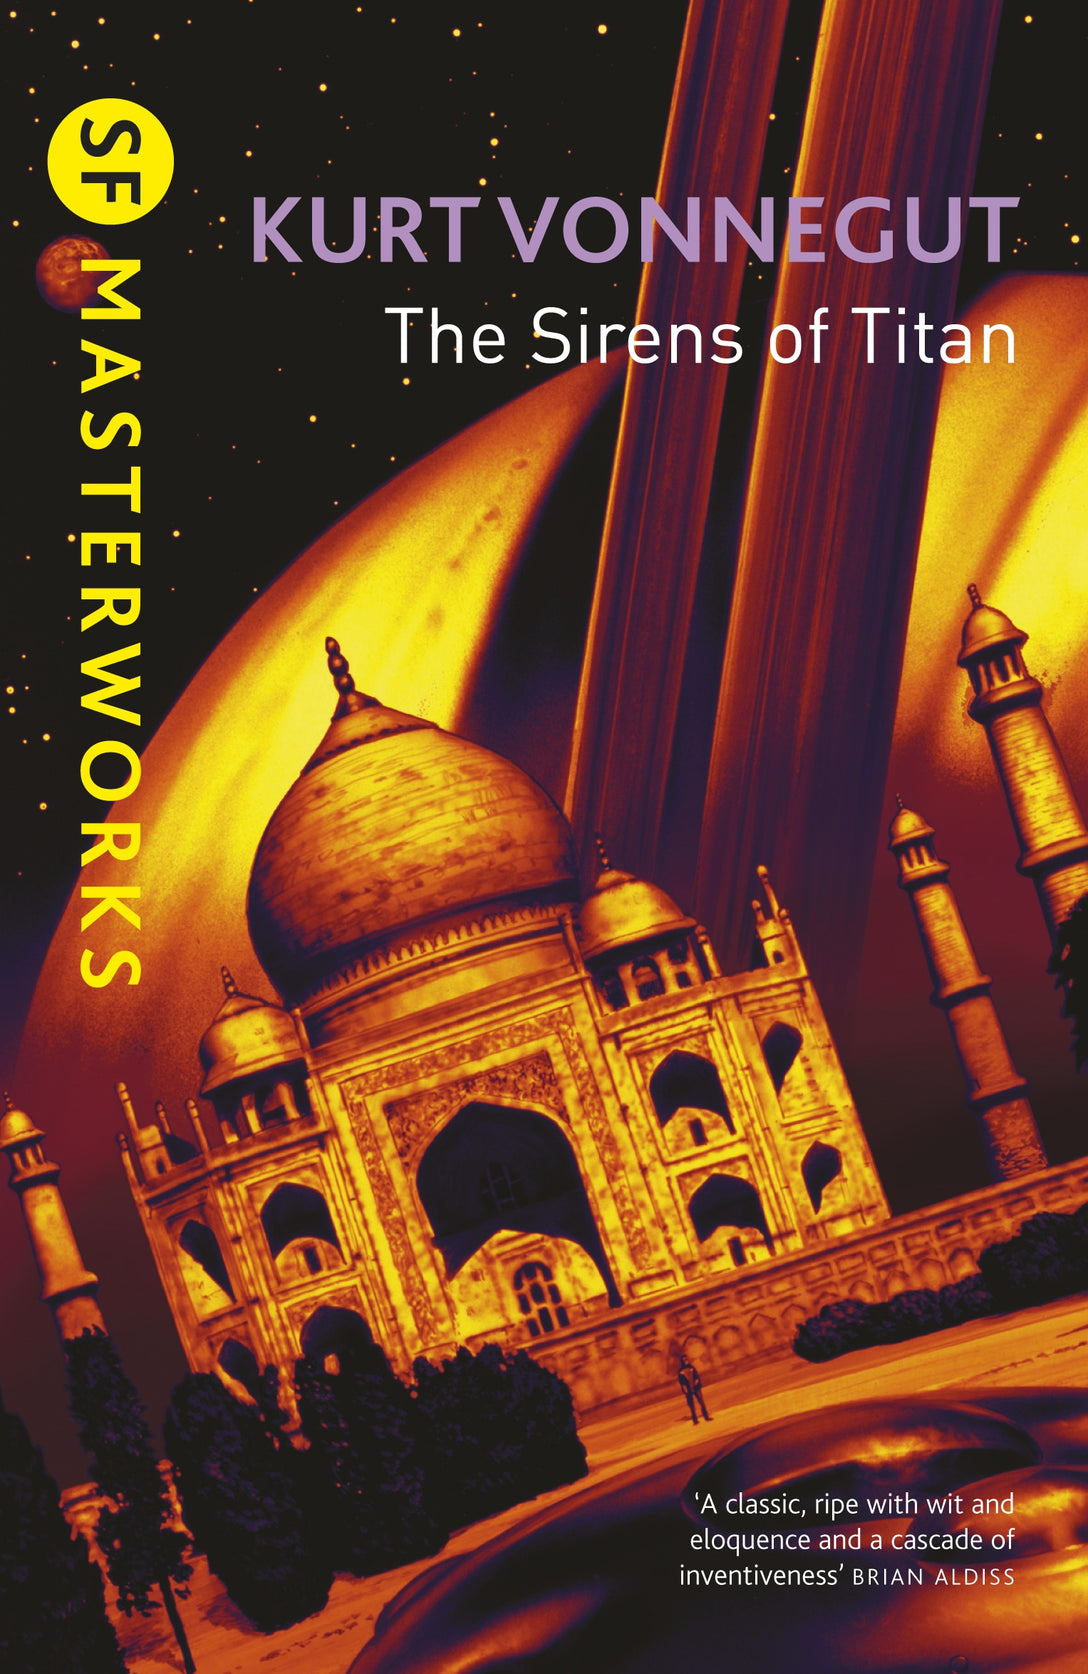 The Sirens Of Titan by Kurt Vonnegut